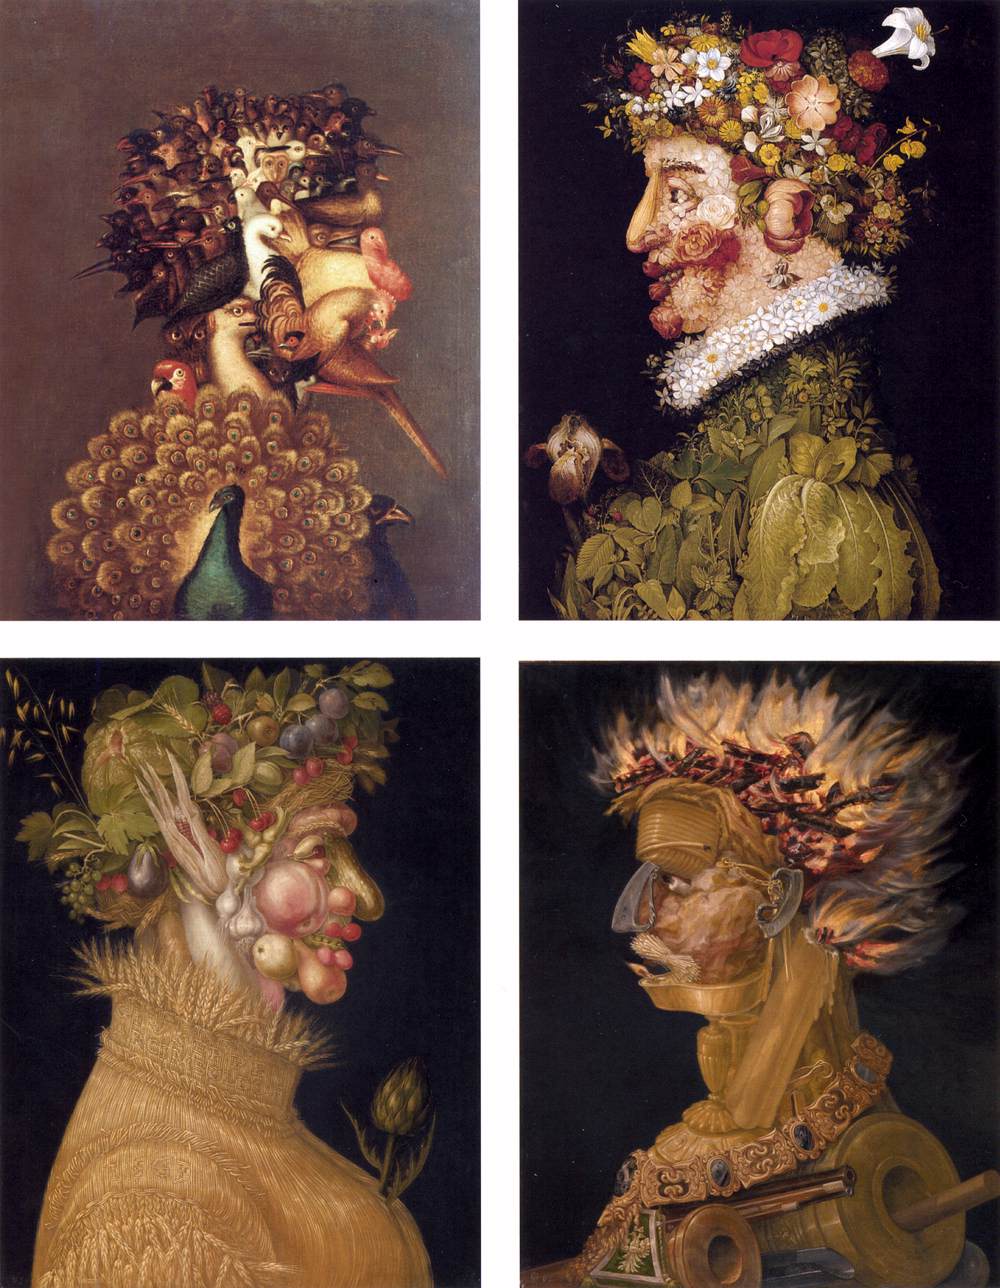 Джузеппе Арчимбольдо, итальянский живописец XVI века, обыгрывал парейдолическую иллюзию в своих работах